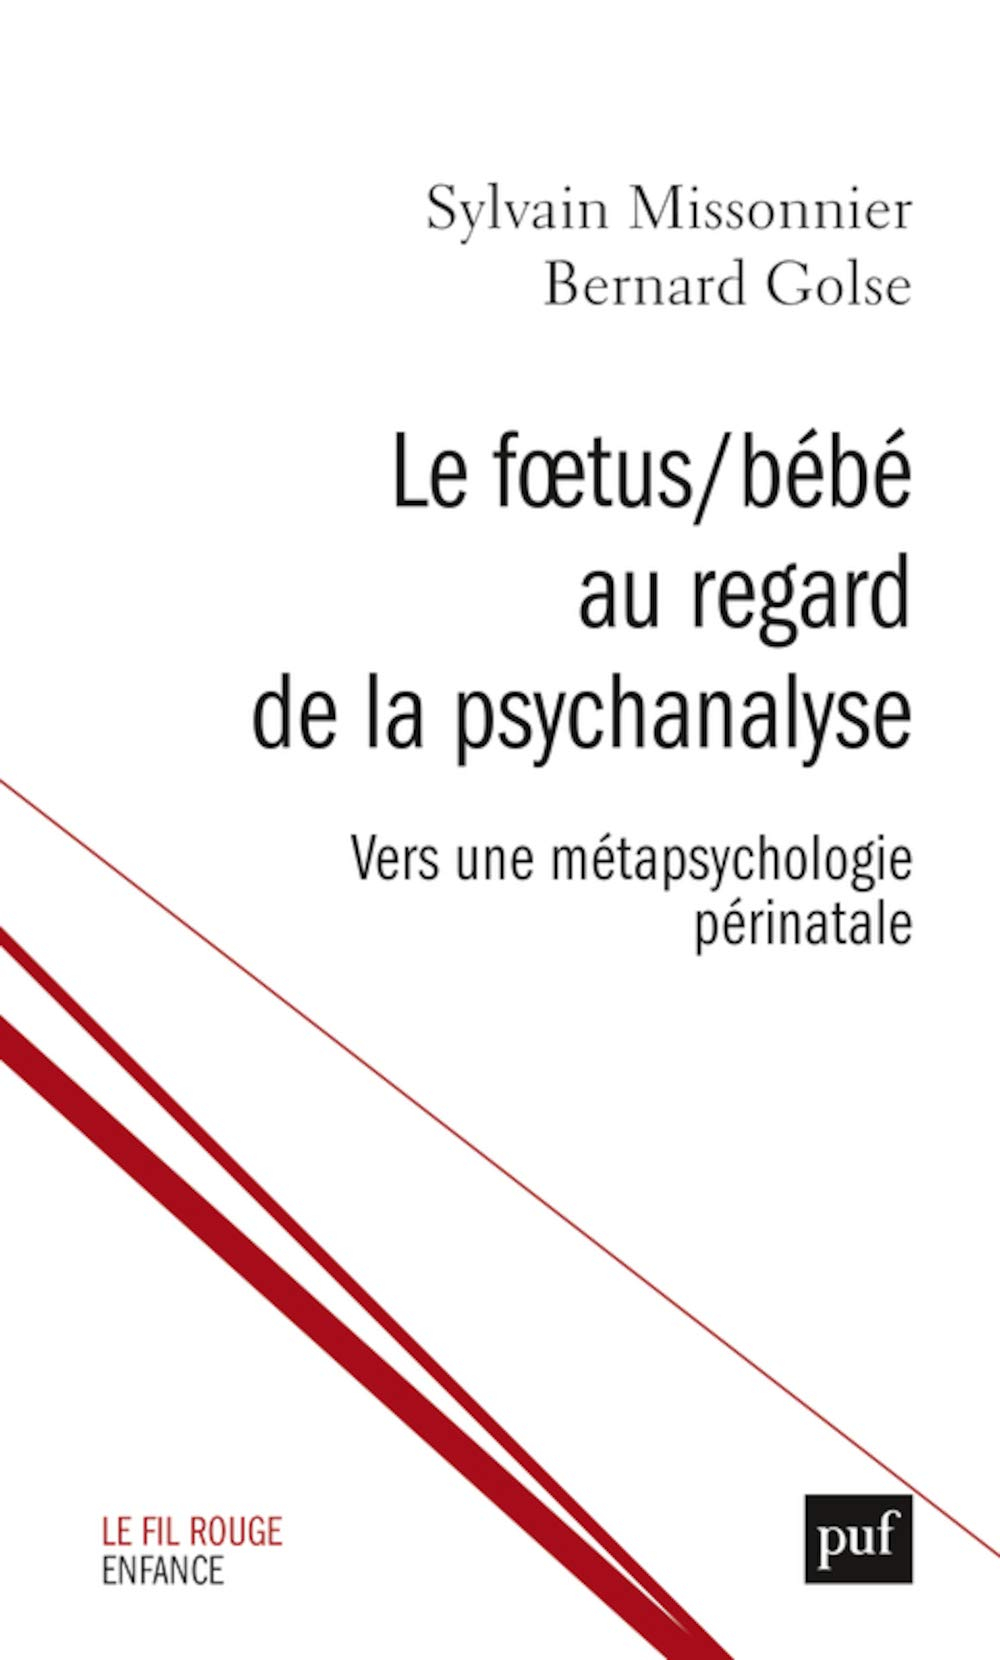 Le Foetus/Bébé au regard de la psychanalyse: Vers une métapsychologie périnatale